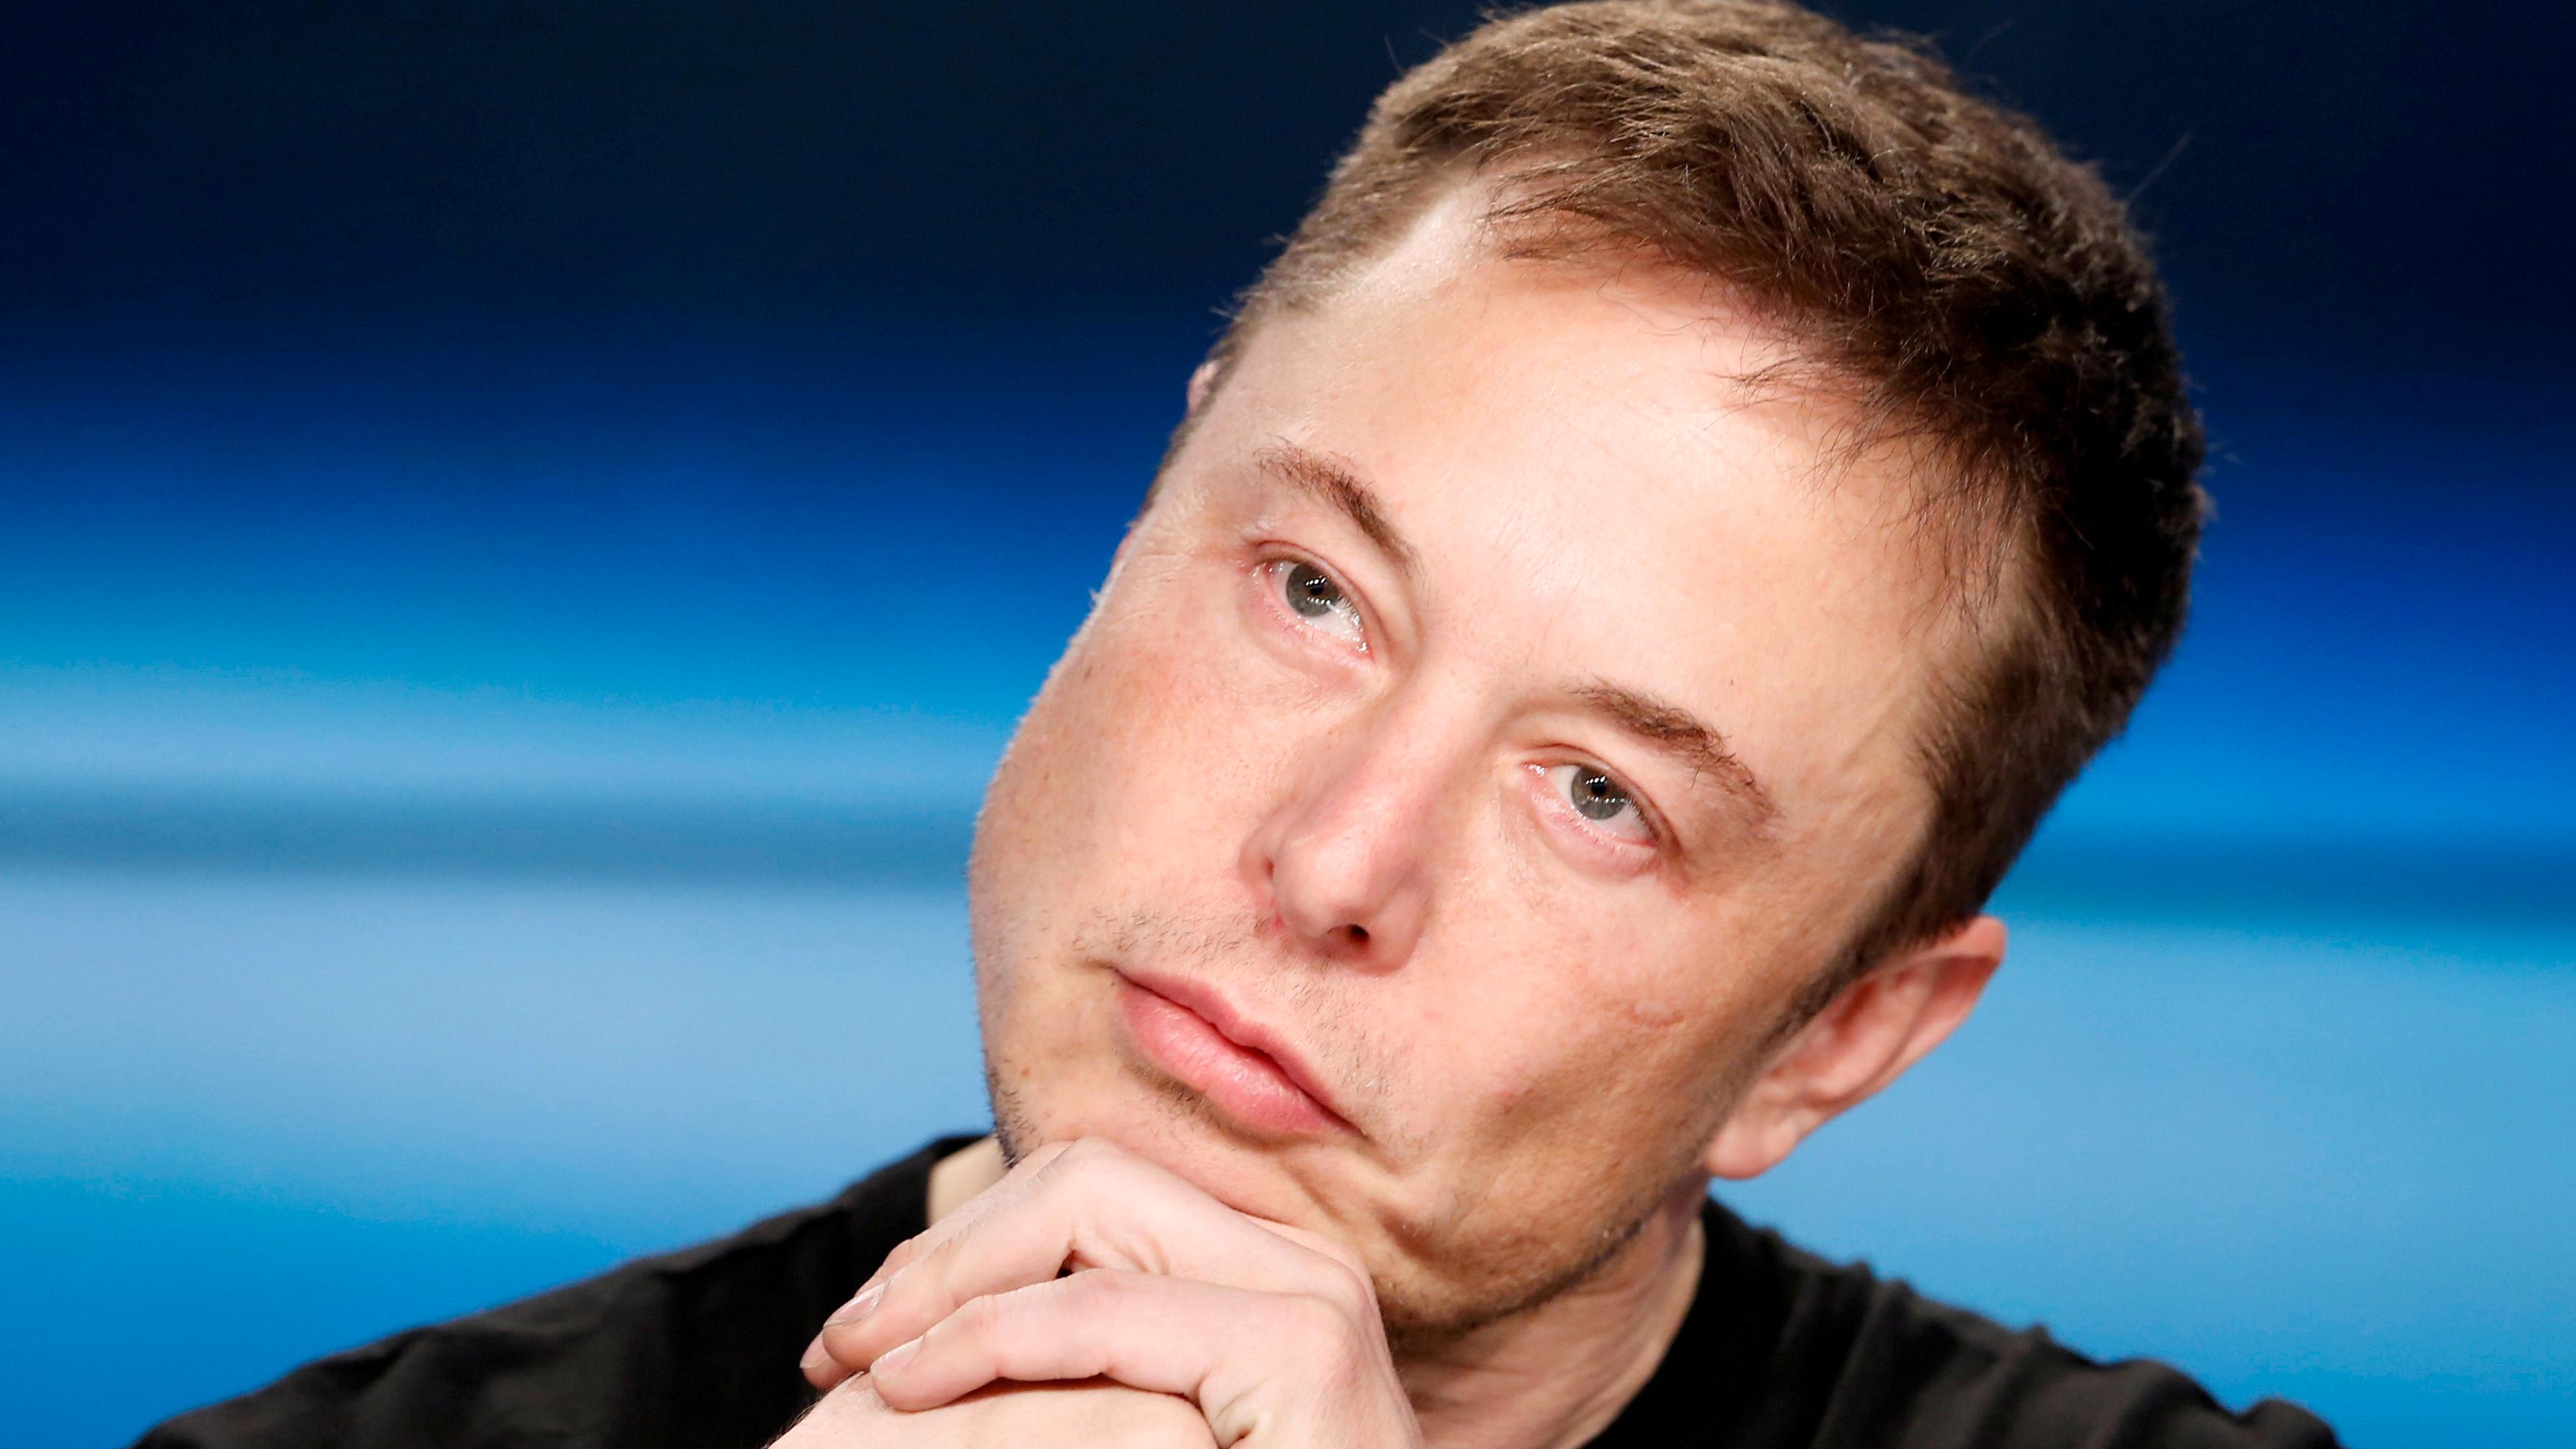 Elon Musk er en meget ivrig bruker av Twitter. Og lar ofte nyheter til Tesla vises på denne plattformen først.